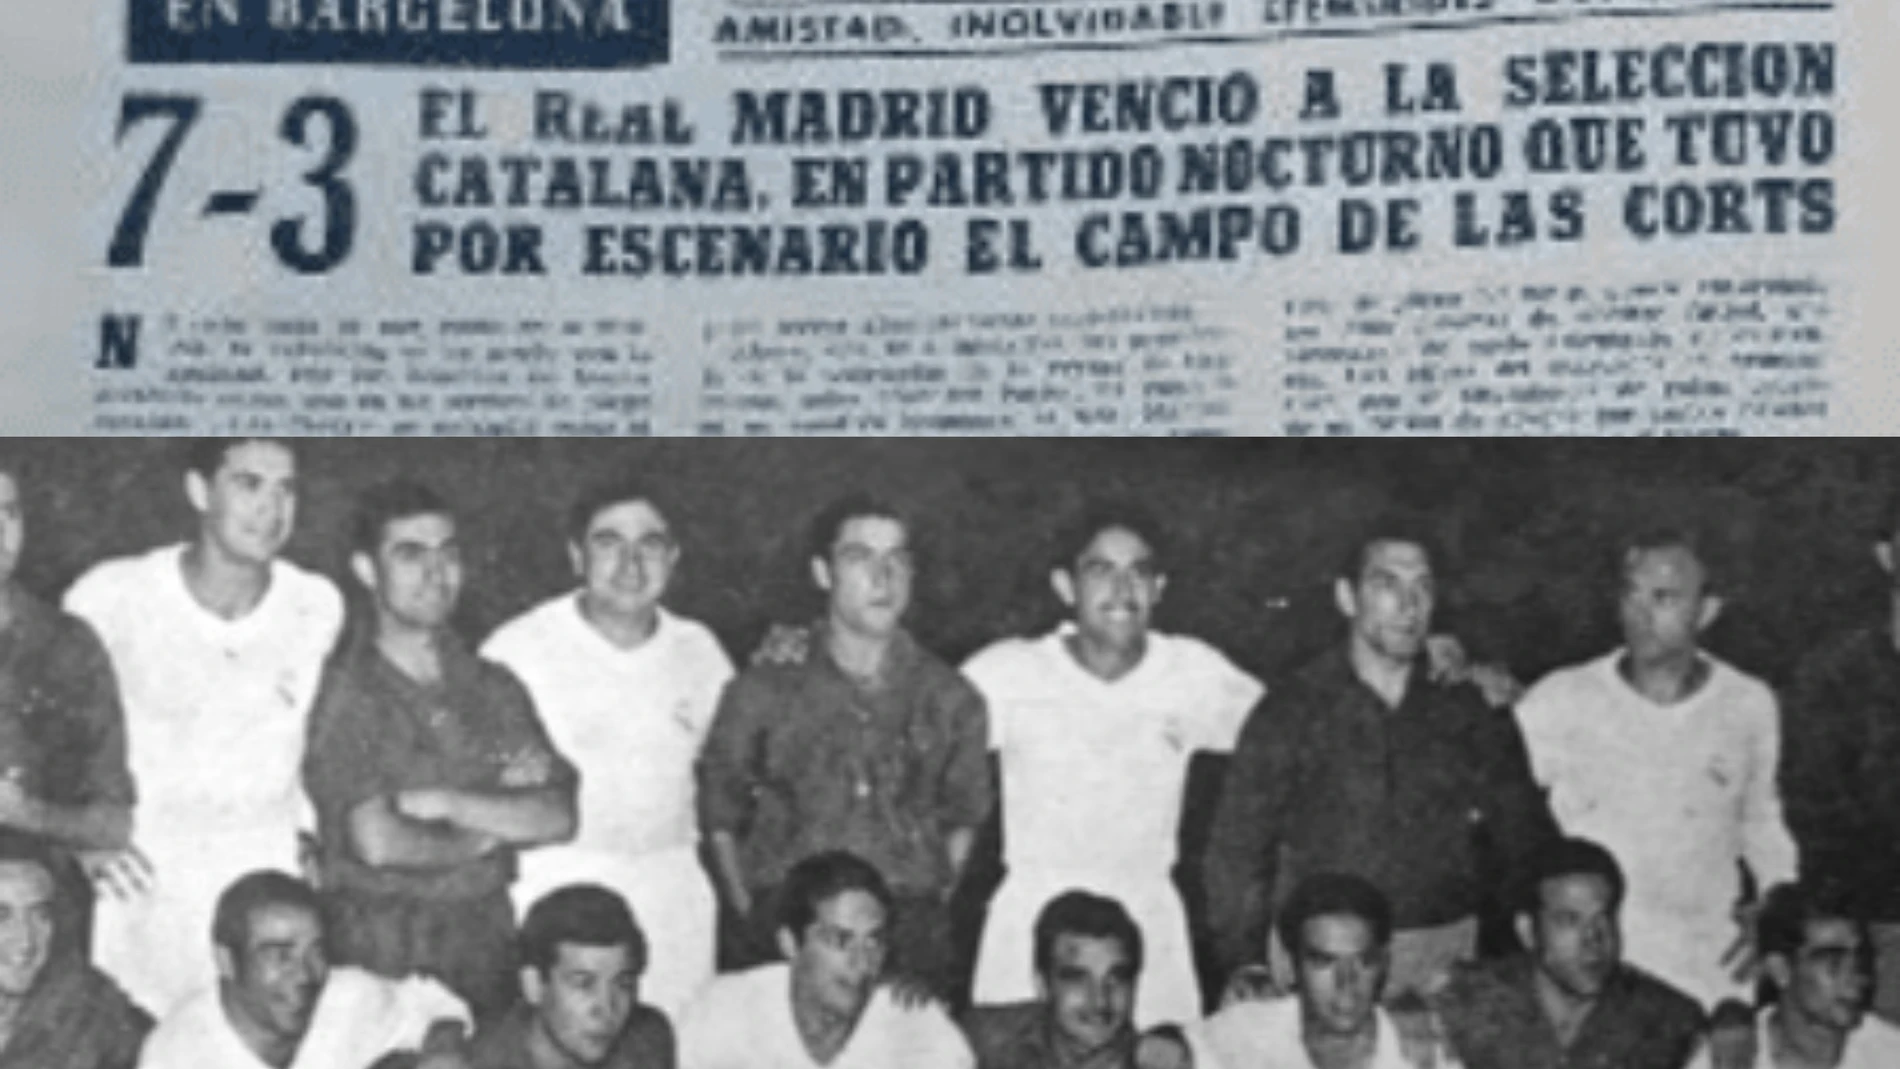 Histórica efeméride deportiva de la Copa de la Amistad entre el Real Madrid y la Selección Catalana